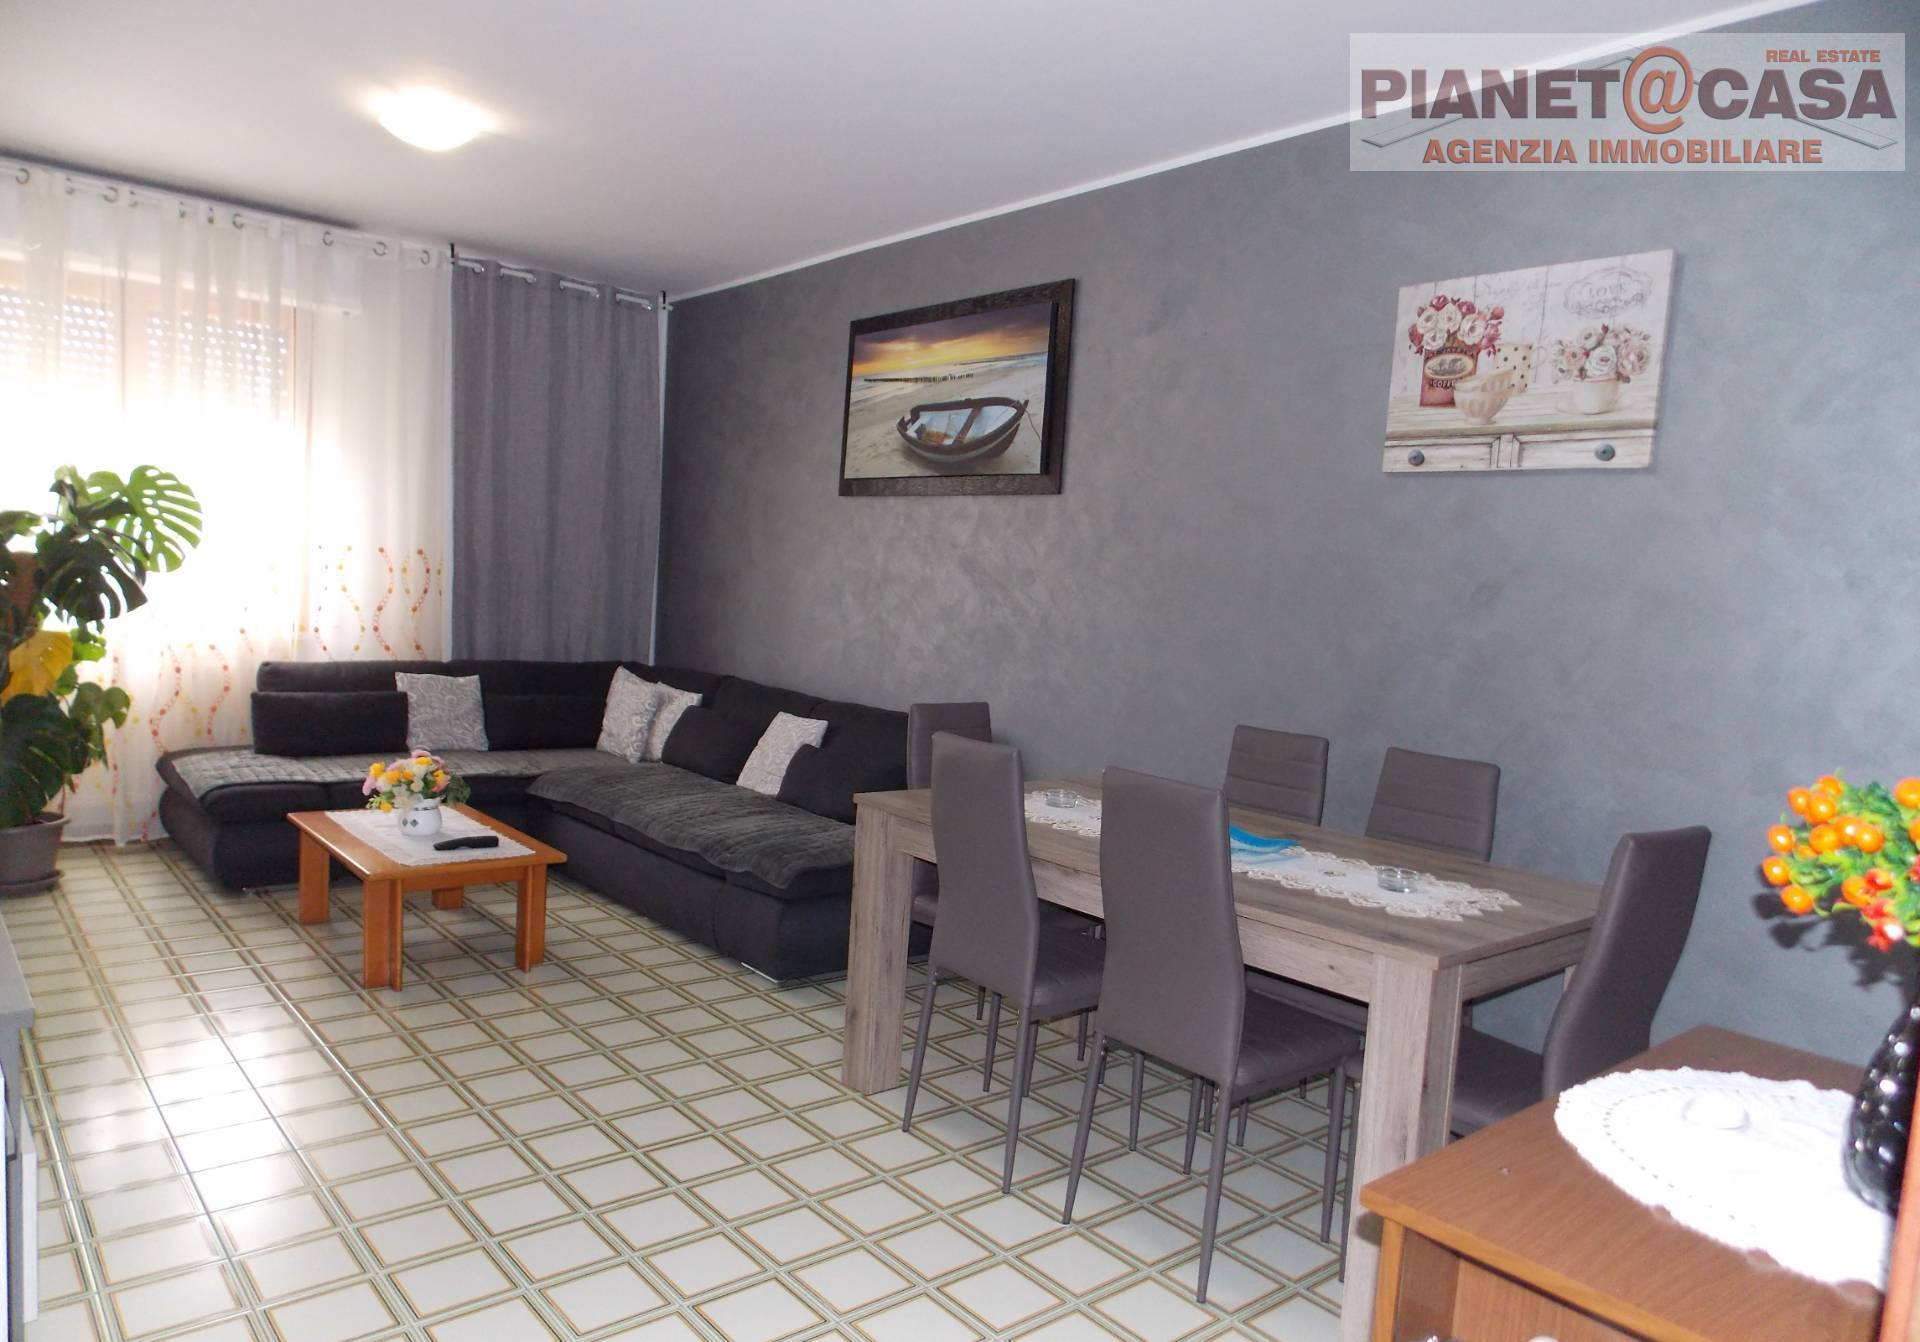 Appartamento in vendita a Spinetoli, 4 locali, zona Località: PAGLIAREDELTRONTO, prezzo € 89.000 | PortaleAgenzieImmobiliari.it